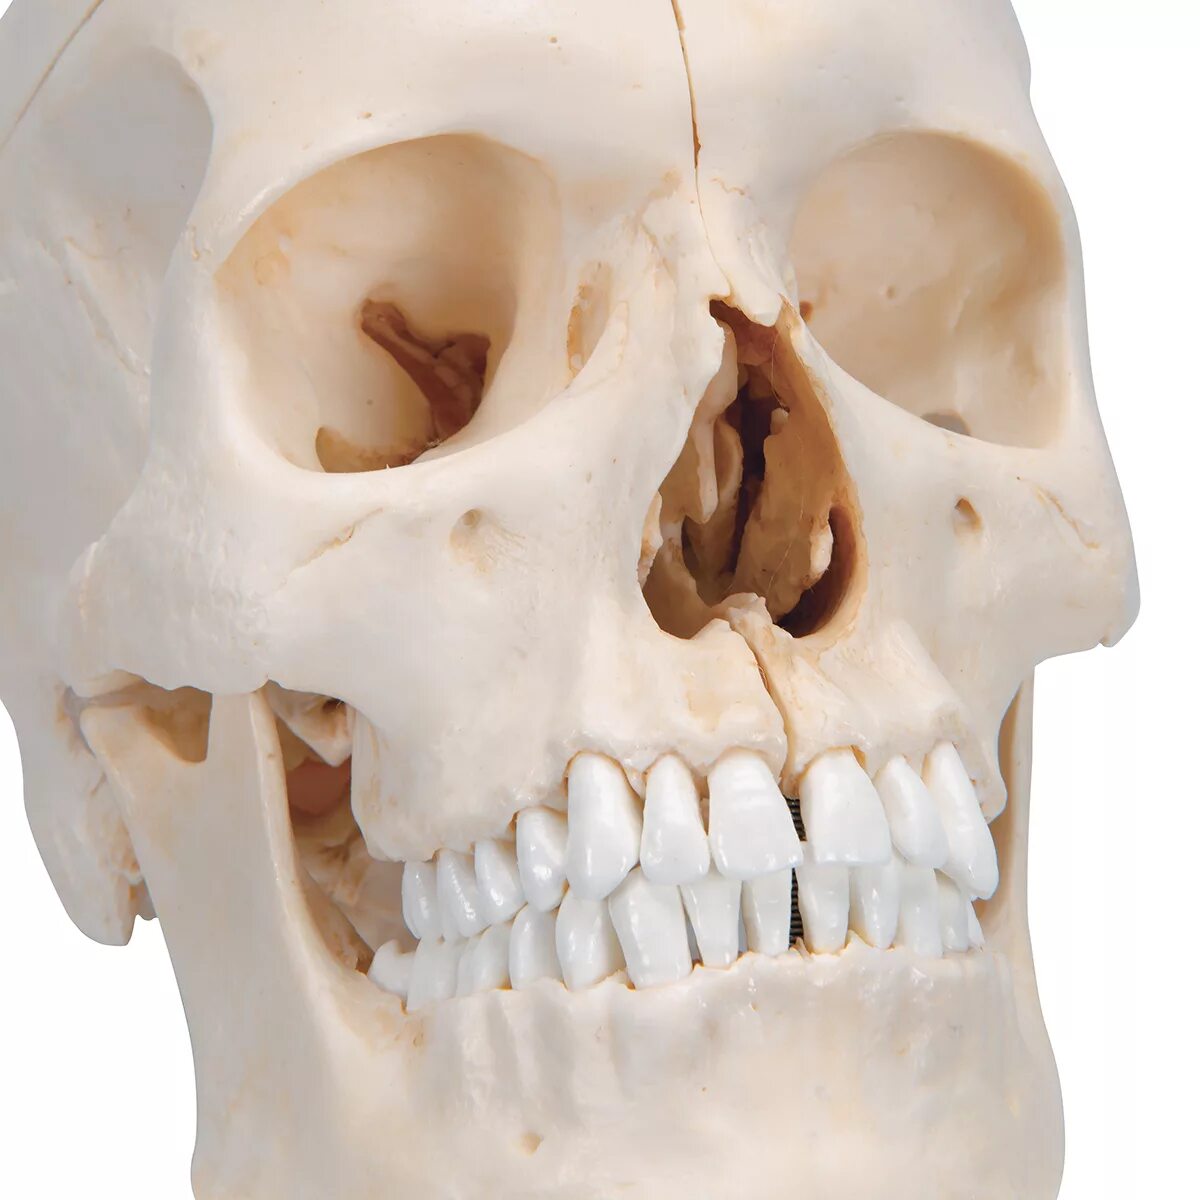 Череп человека. 3b Scientific череп. Череп модель. Макет черепа человека.